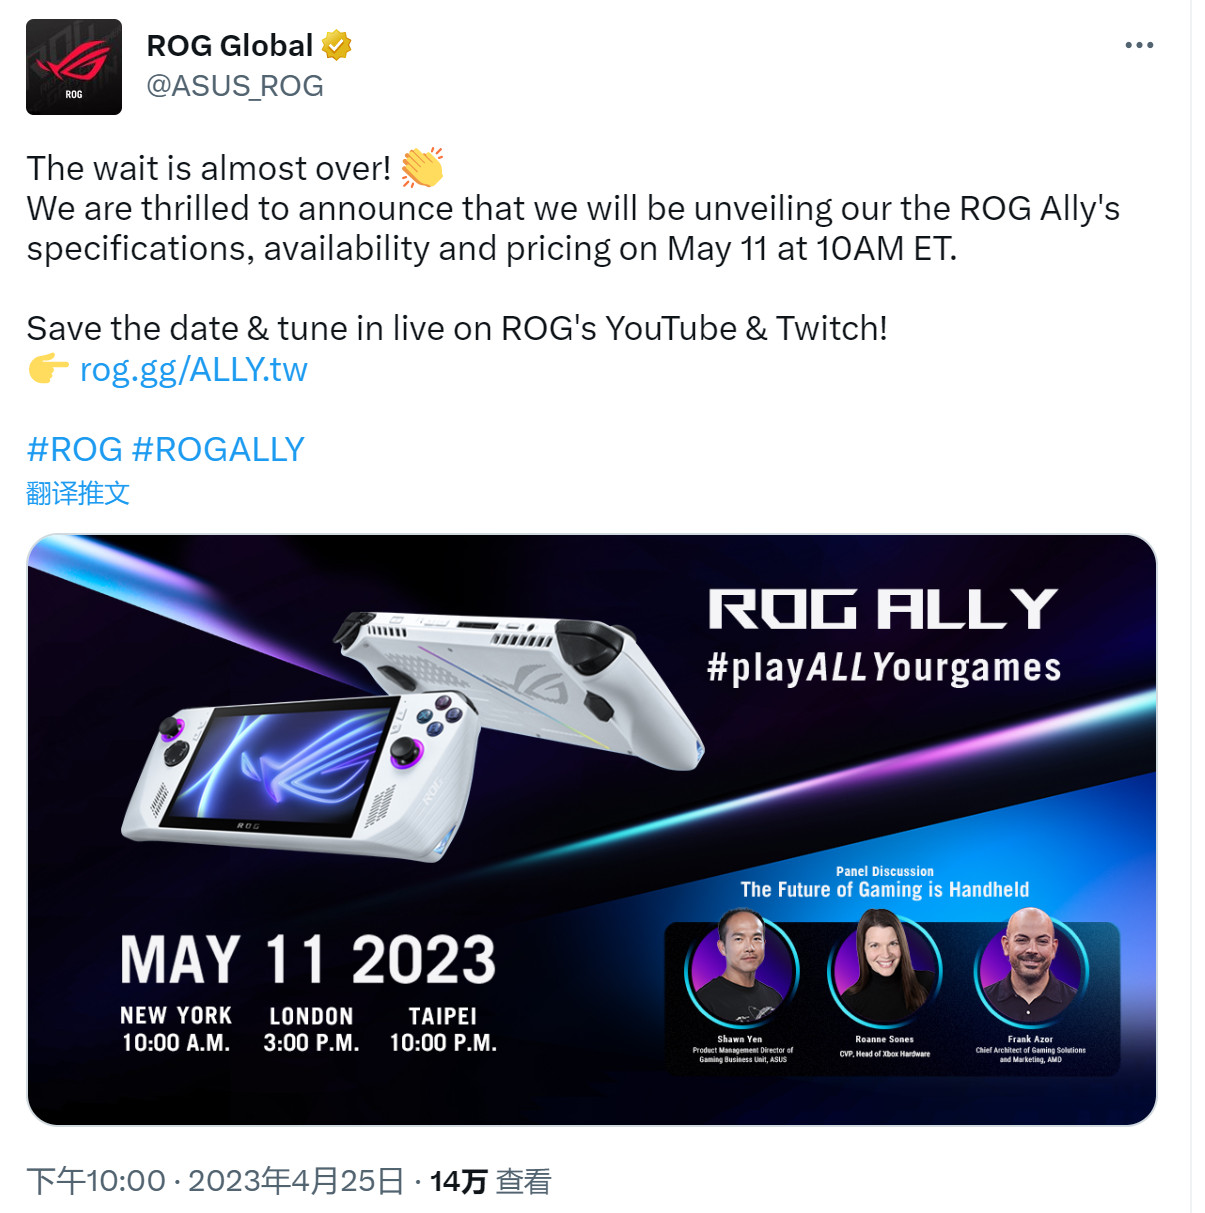 华硕掌机ROG Ally 5月11日发售 配置曝光、定价不到1000美元 二次世界 第2张